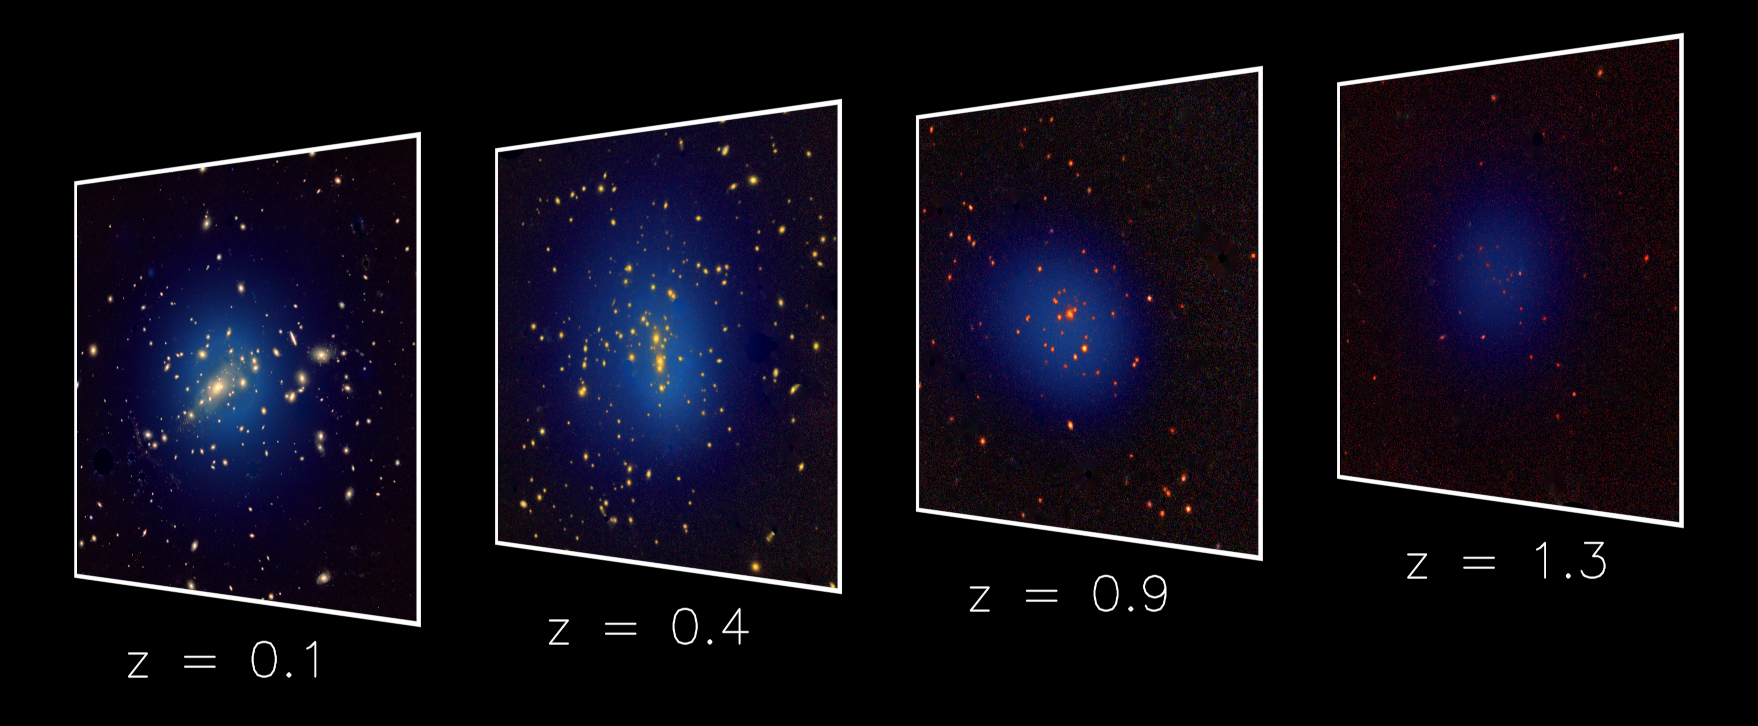 Vier Aufnahmen von Galaxien in Richtung von vier Galaxienhaufen in unterschiedlichen Entfernungen. Es werde jedoch nur die Galaxien angezeigt, die in den jeweiligen Haufen zu erwarten sind